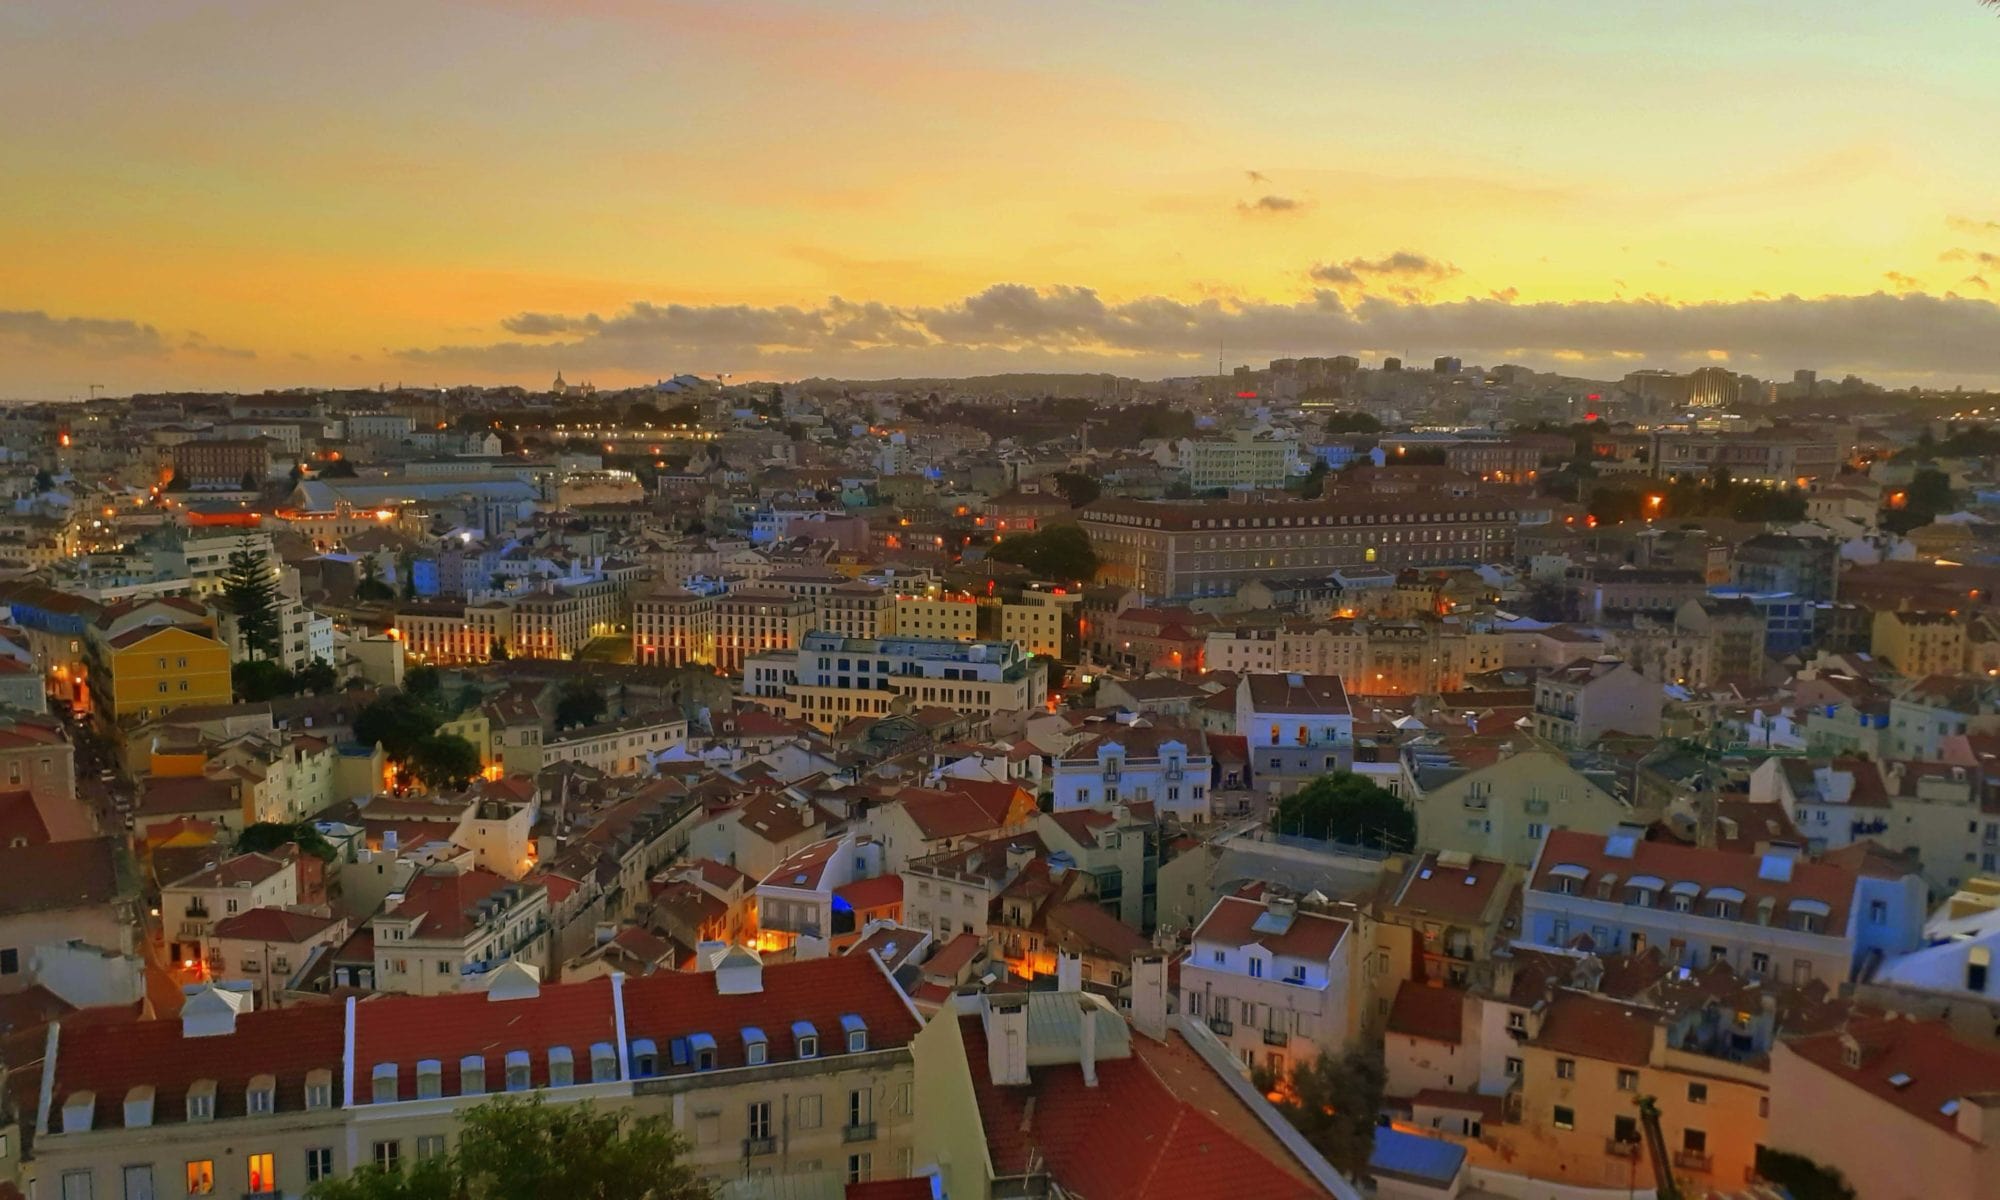 Aussichtspunkte in Lissabon für den Sonnenuntergang